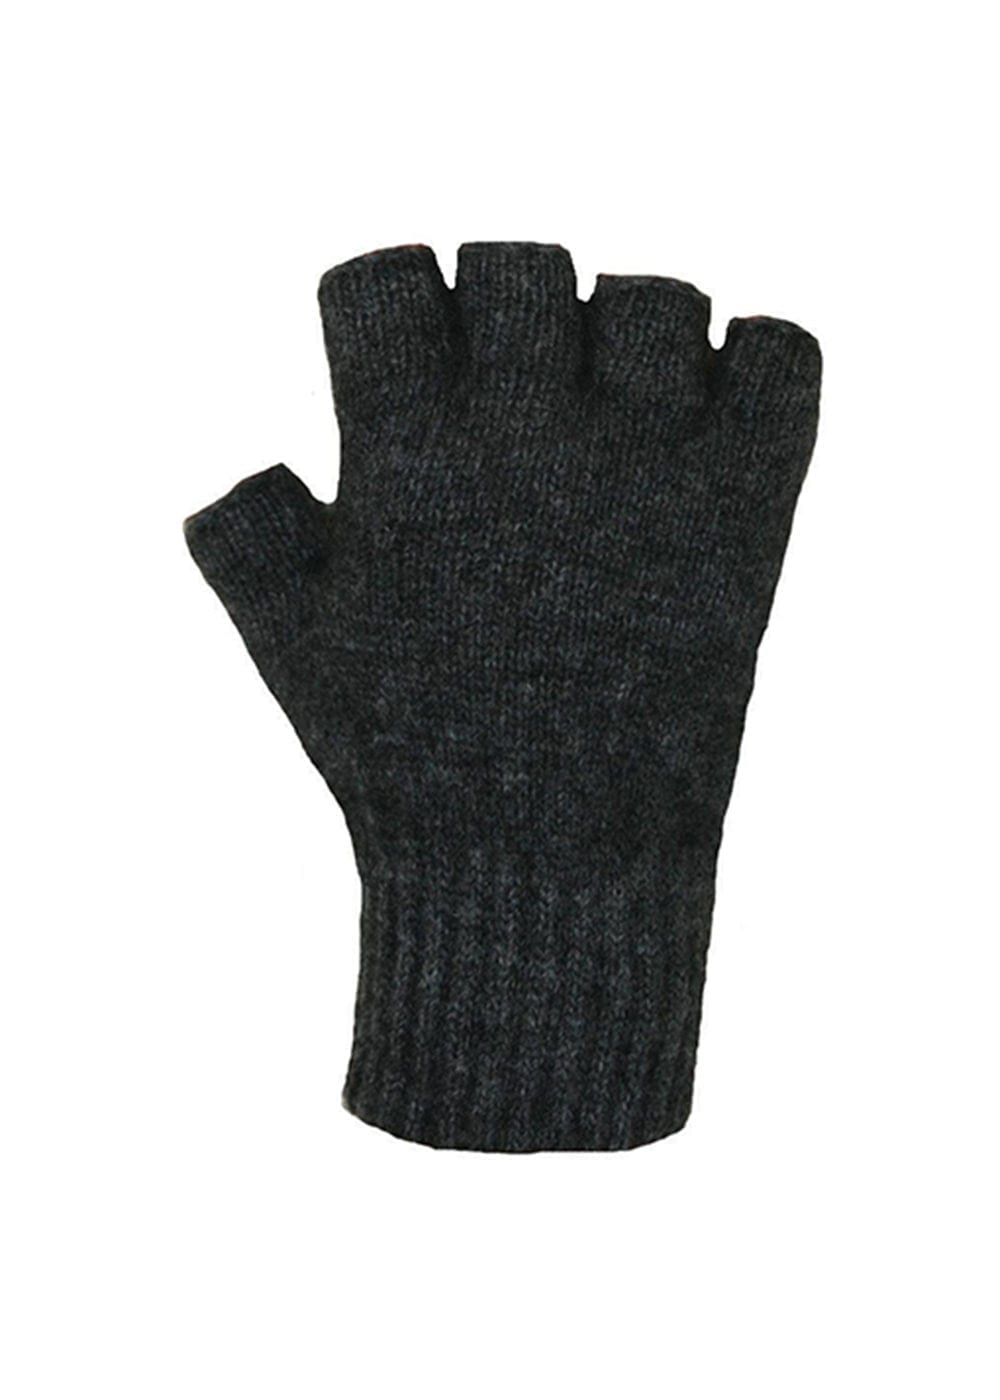 high quality fingerless gloves